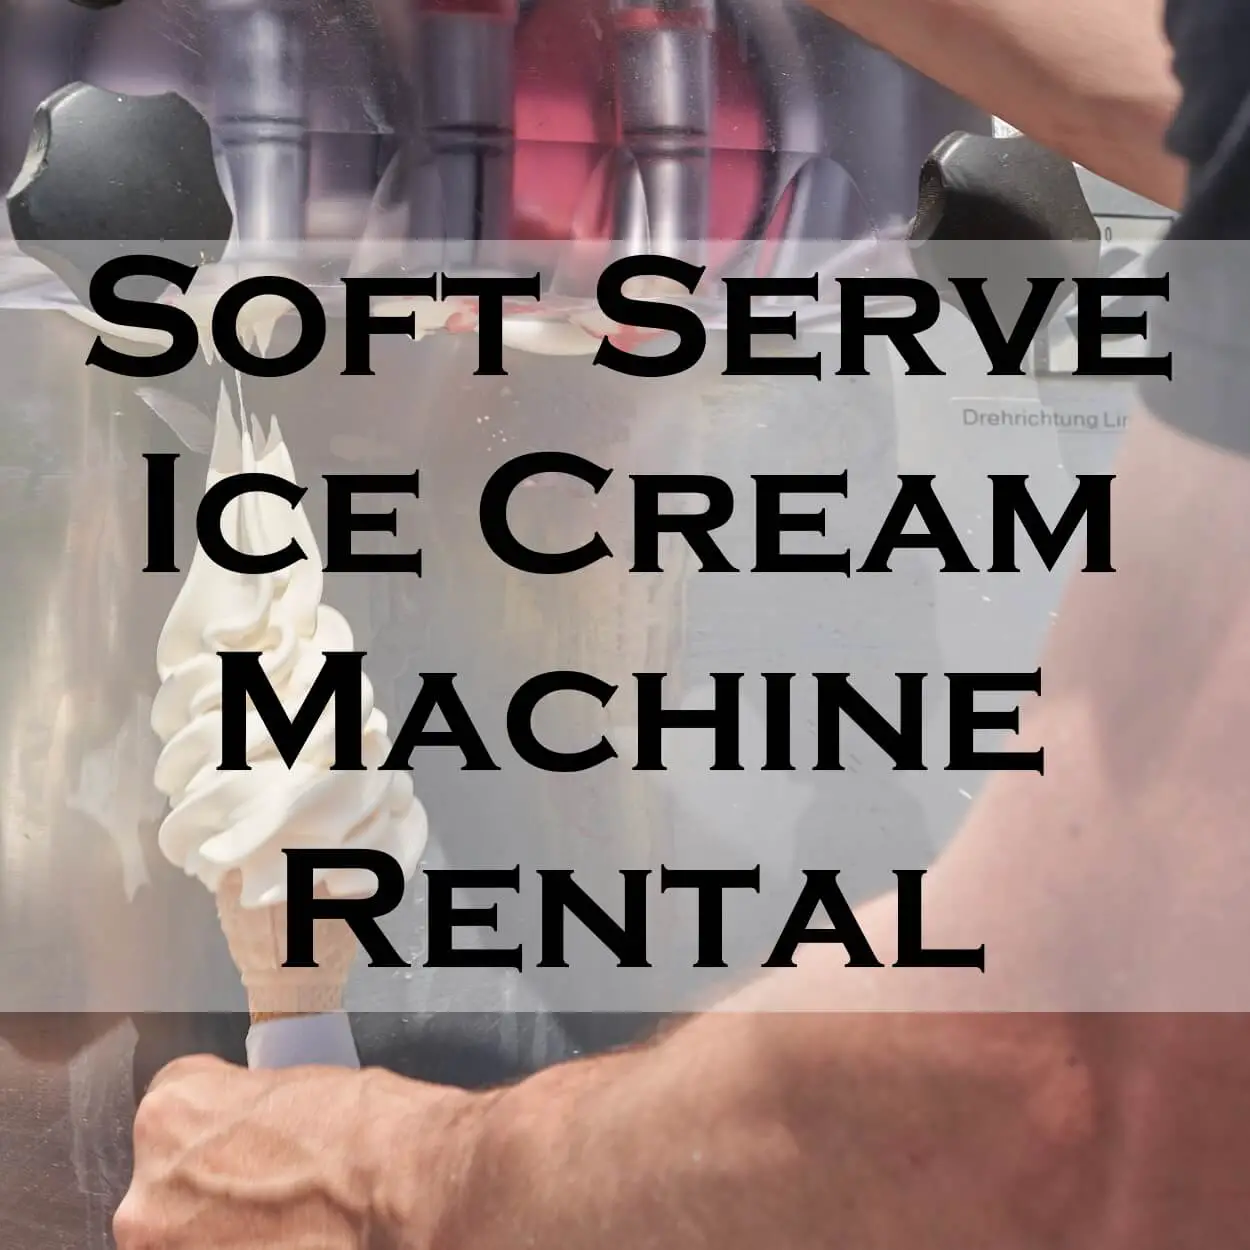 Soft Serve Ice Cream Machine Rental